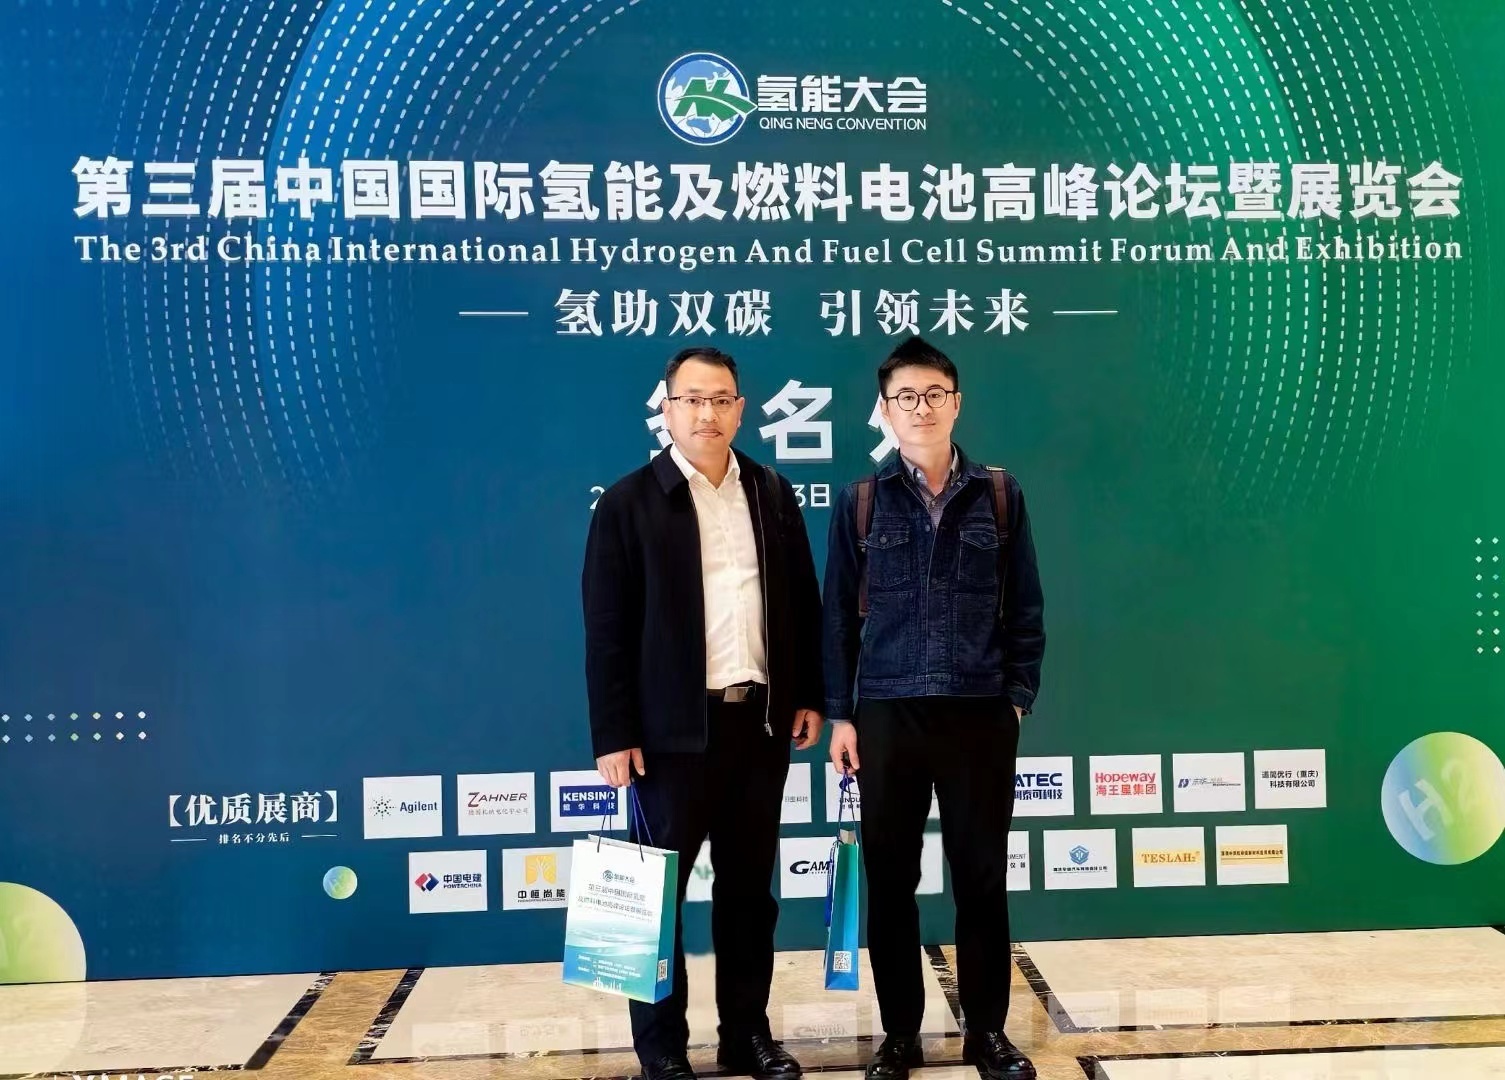 环球分析测试仪器有限公司助力第三届中国国际氢能及燃料电池高峰论坛